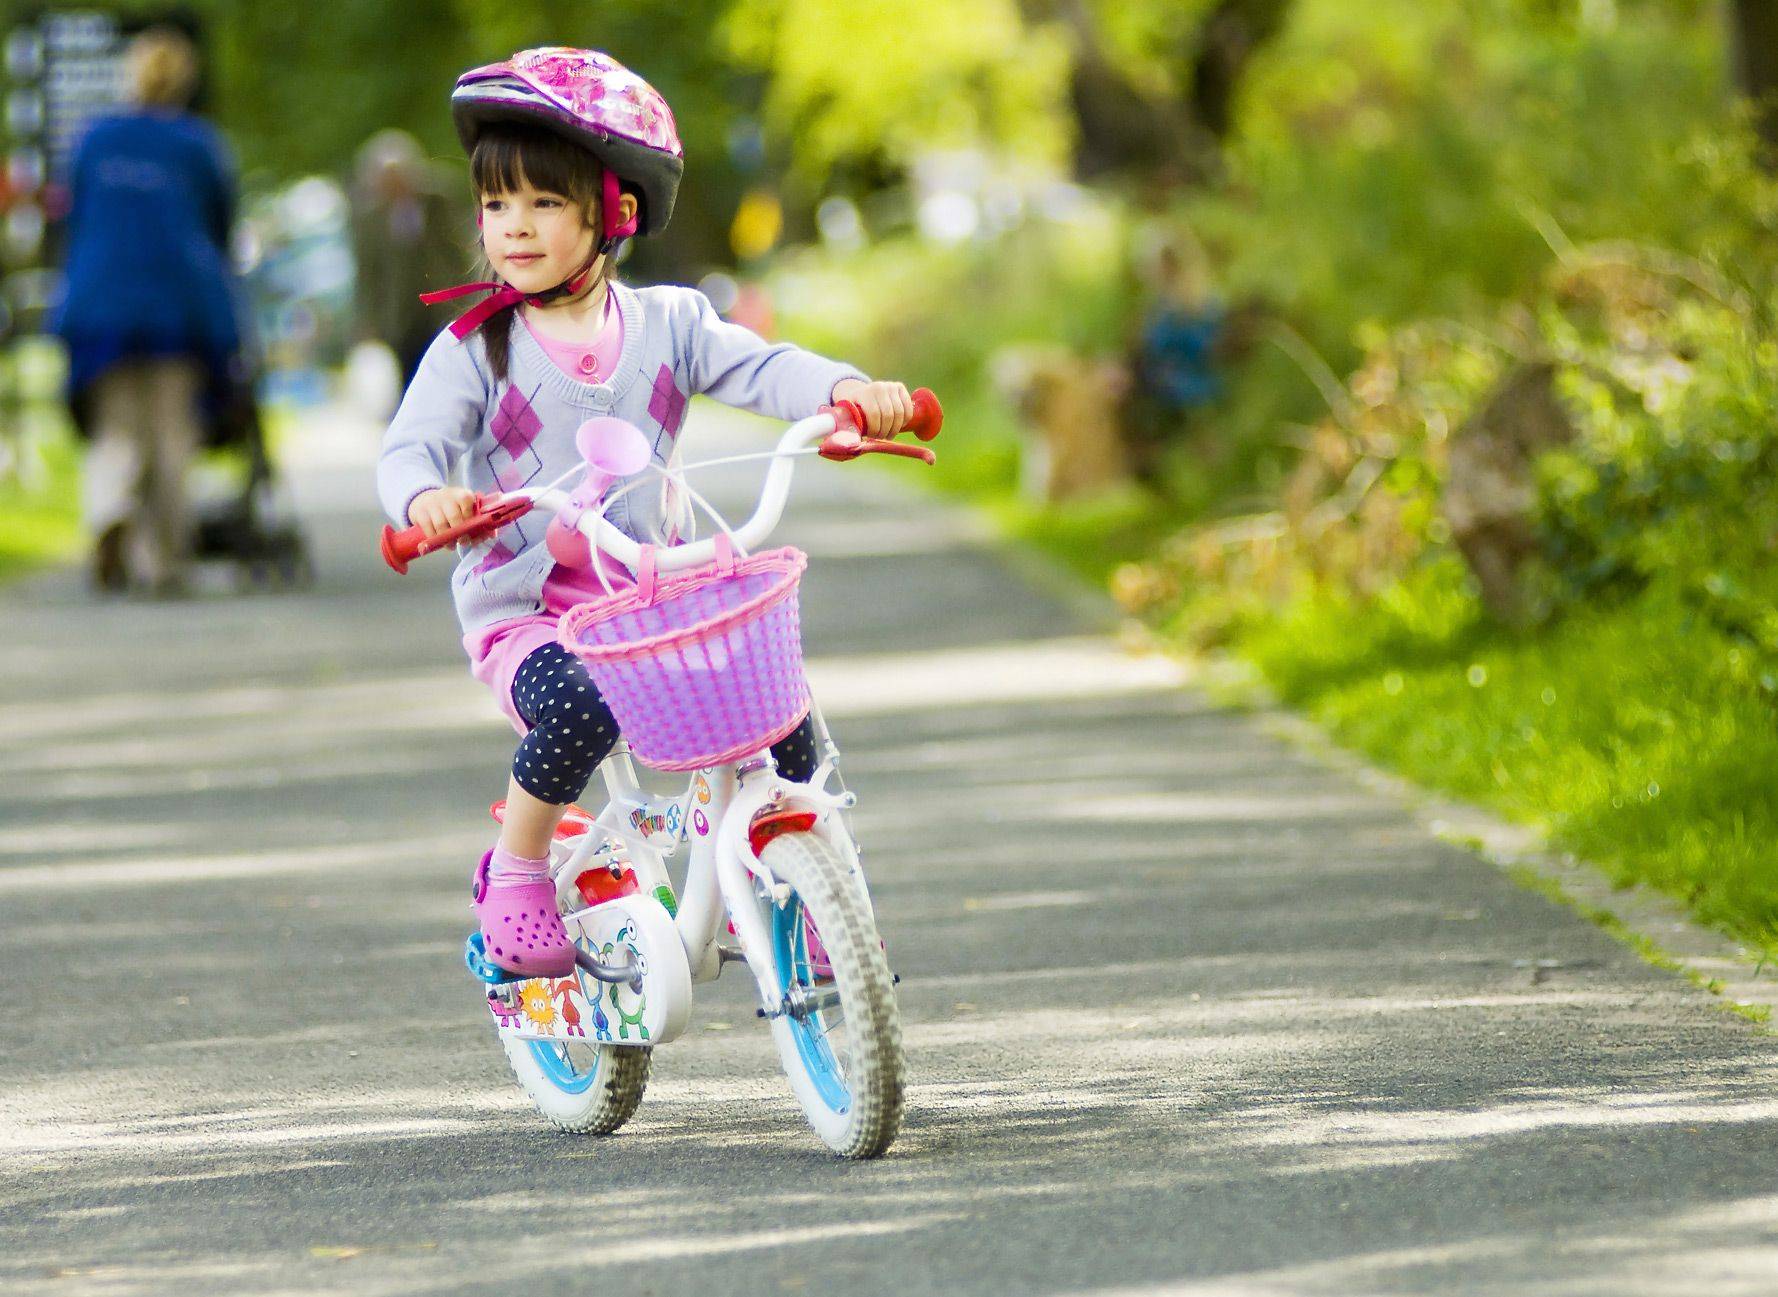 The children ride bikes. Дети с велосипедом. Велик для детей. Велосипед для девочки. Катание на велосипеде дети.